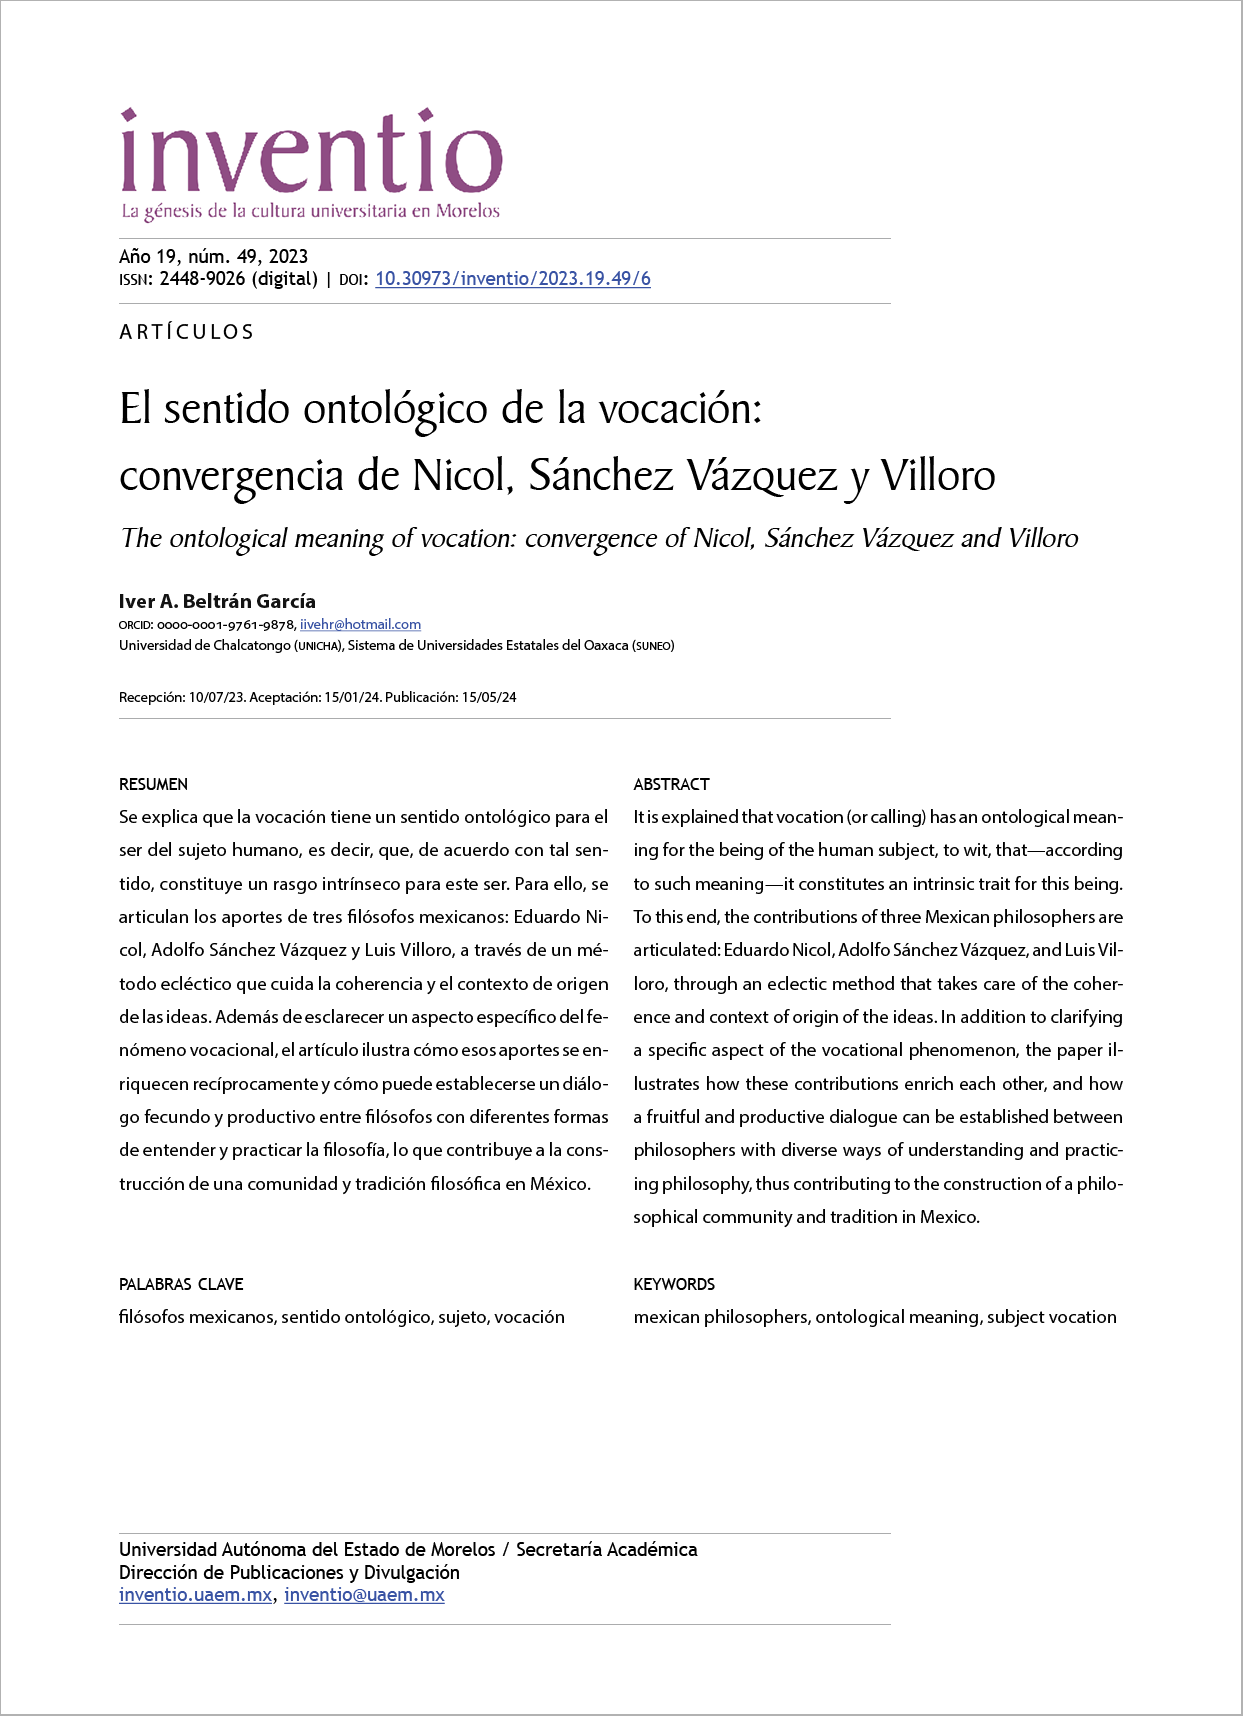 El sentido ontológico de la vocación: convergencia de Nicol, Sánchez Vázquez y Villoro